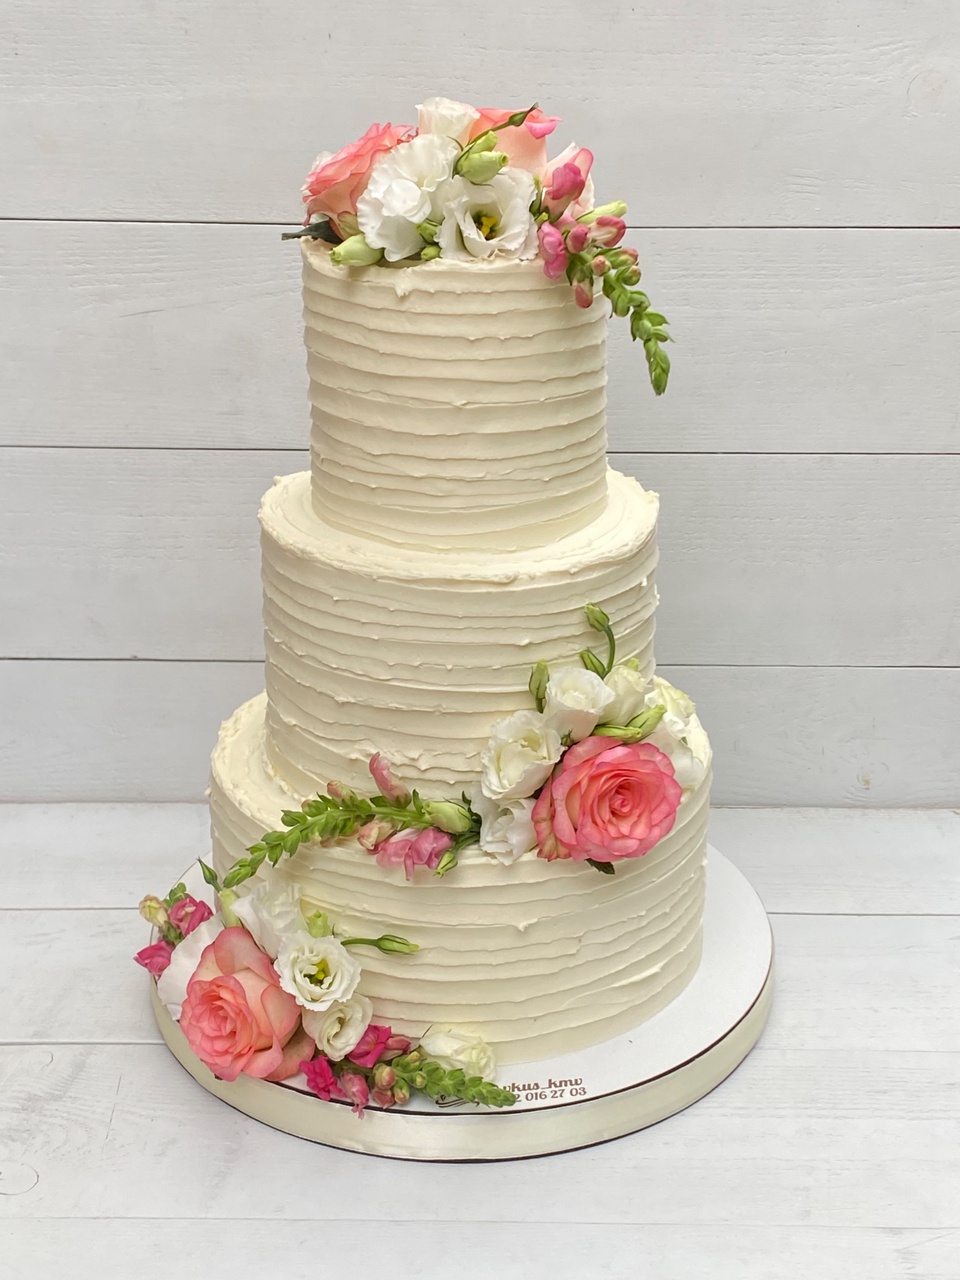 Свадебный торт - 1 700 ₽, заказать онлайн.